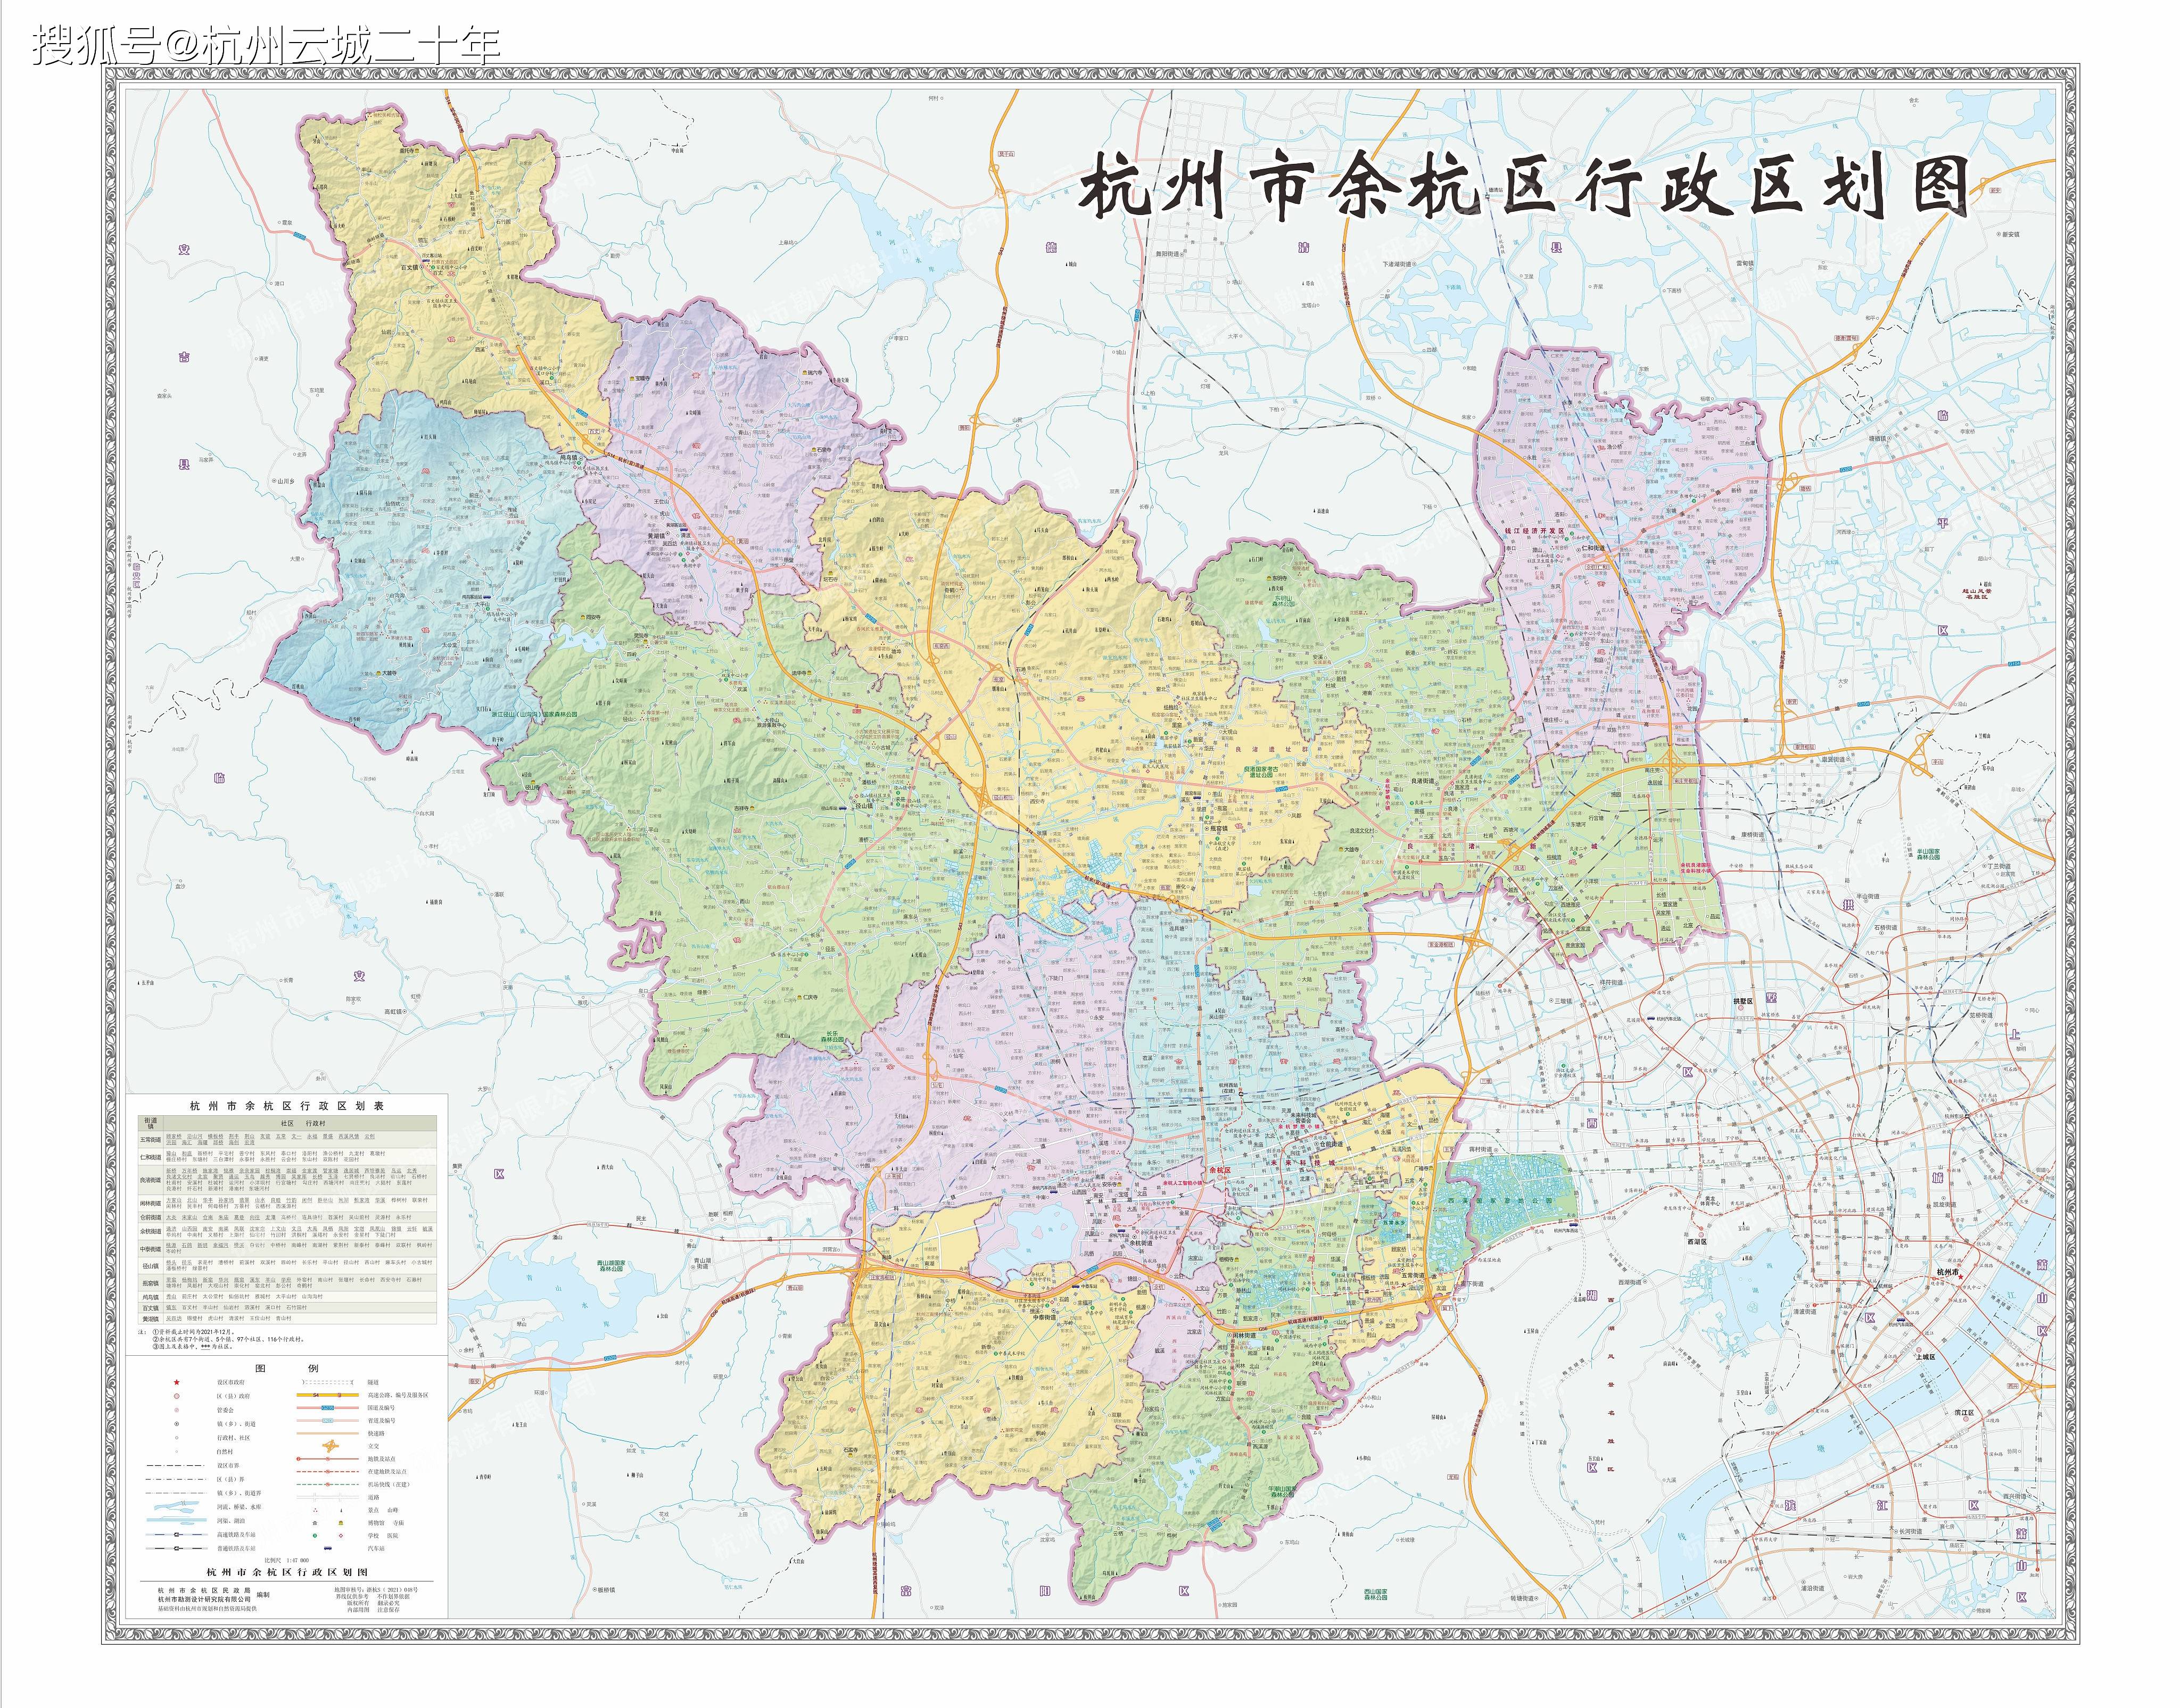 杭州市余杭区新版行政区划图拆分开来了解一下